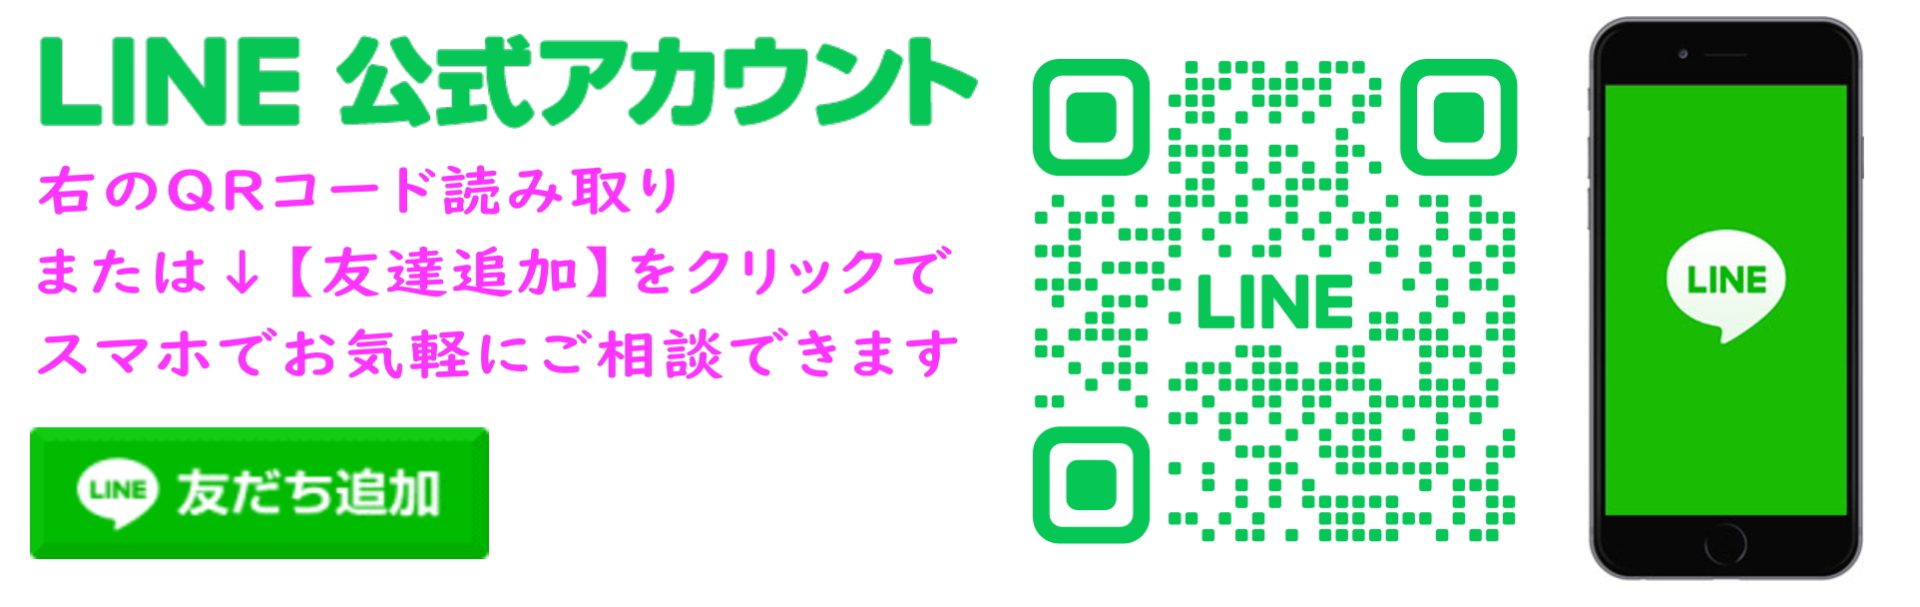 姫路 LINE 公式アカウント